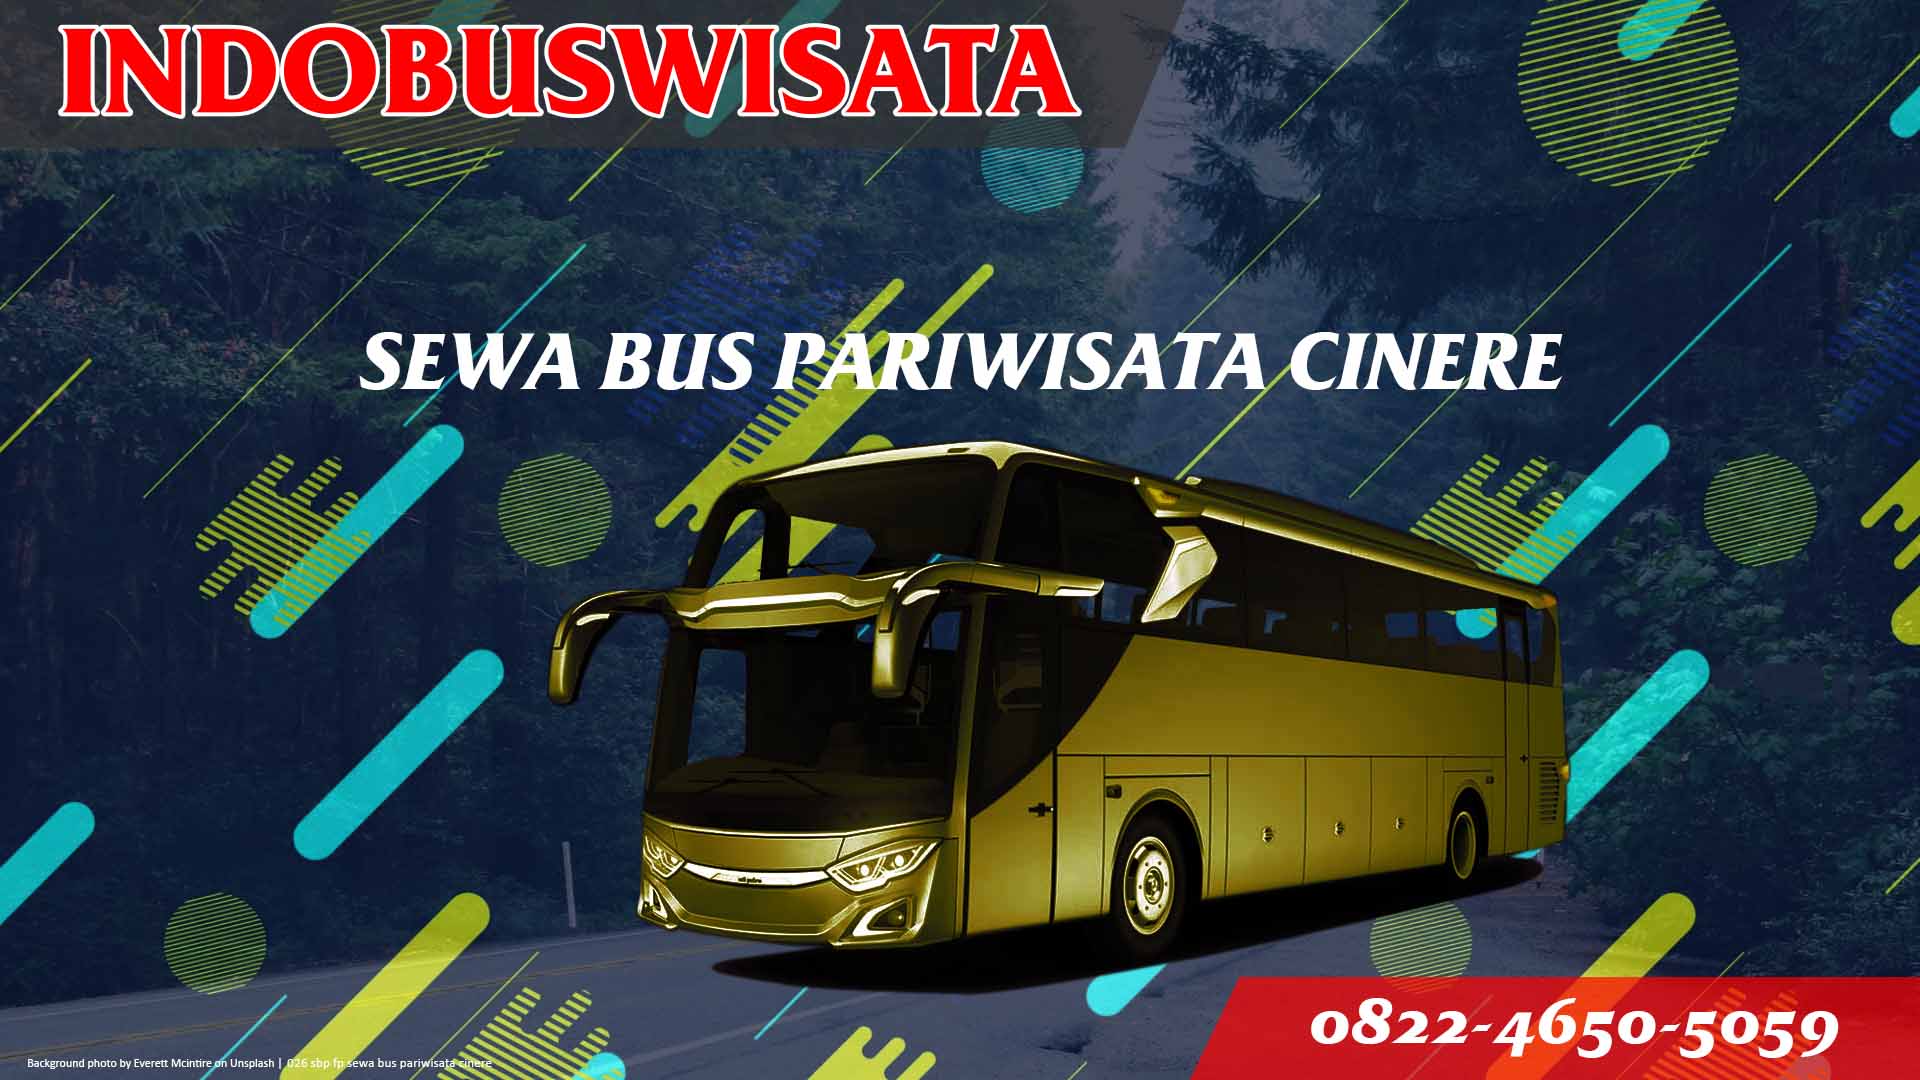 026 Sbp Fp Sewa Bus Pariwisata Cinere Indobuswisata